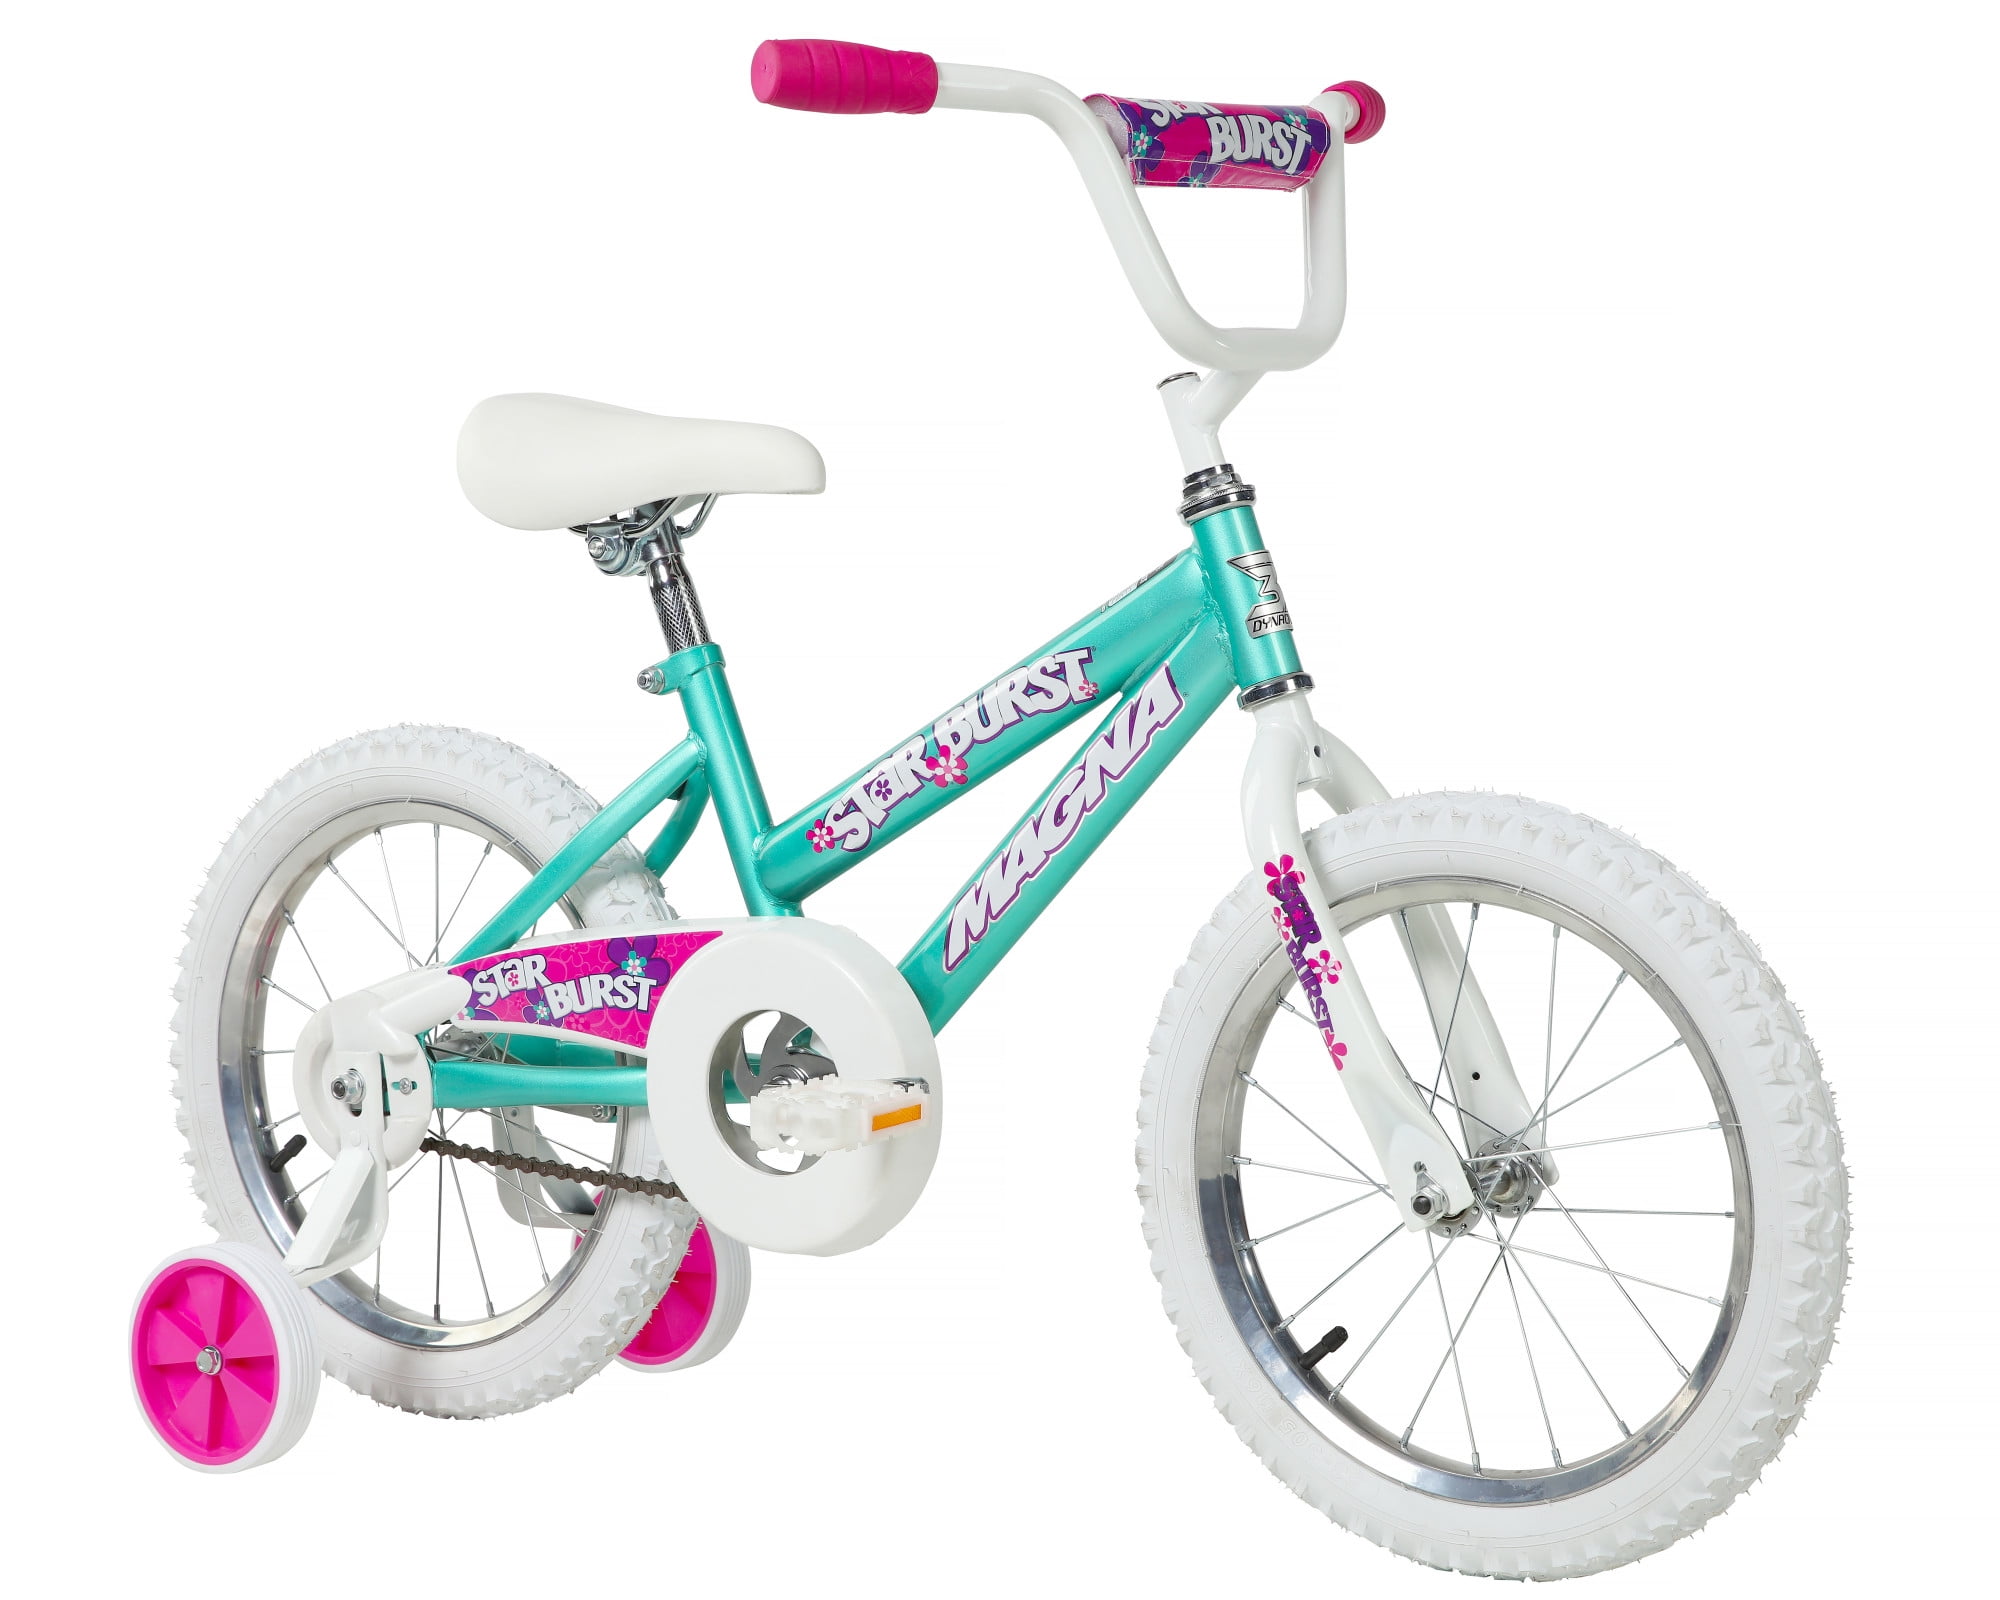 Trolls Girls Bike Purple Pink White 16 087876056218 for sale online 